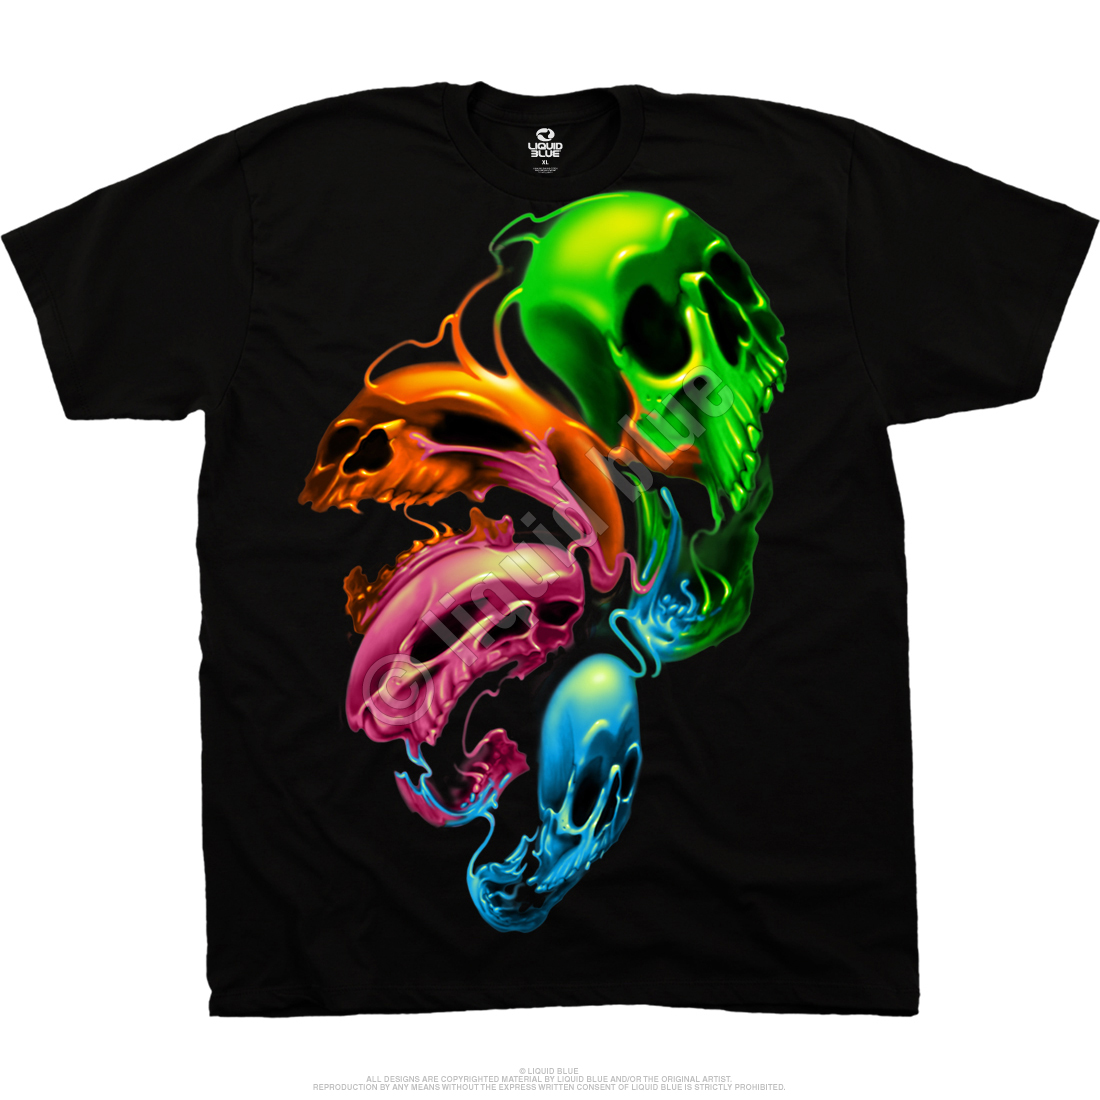 Liquid Neon Skulls T-shirt